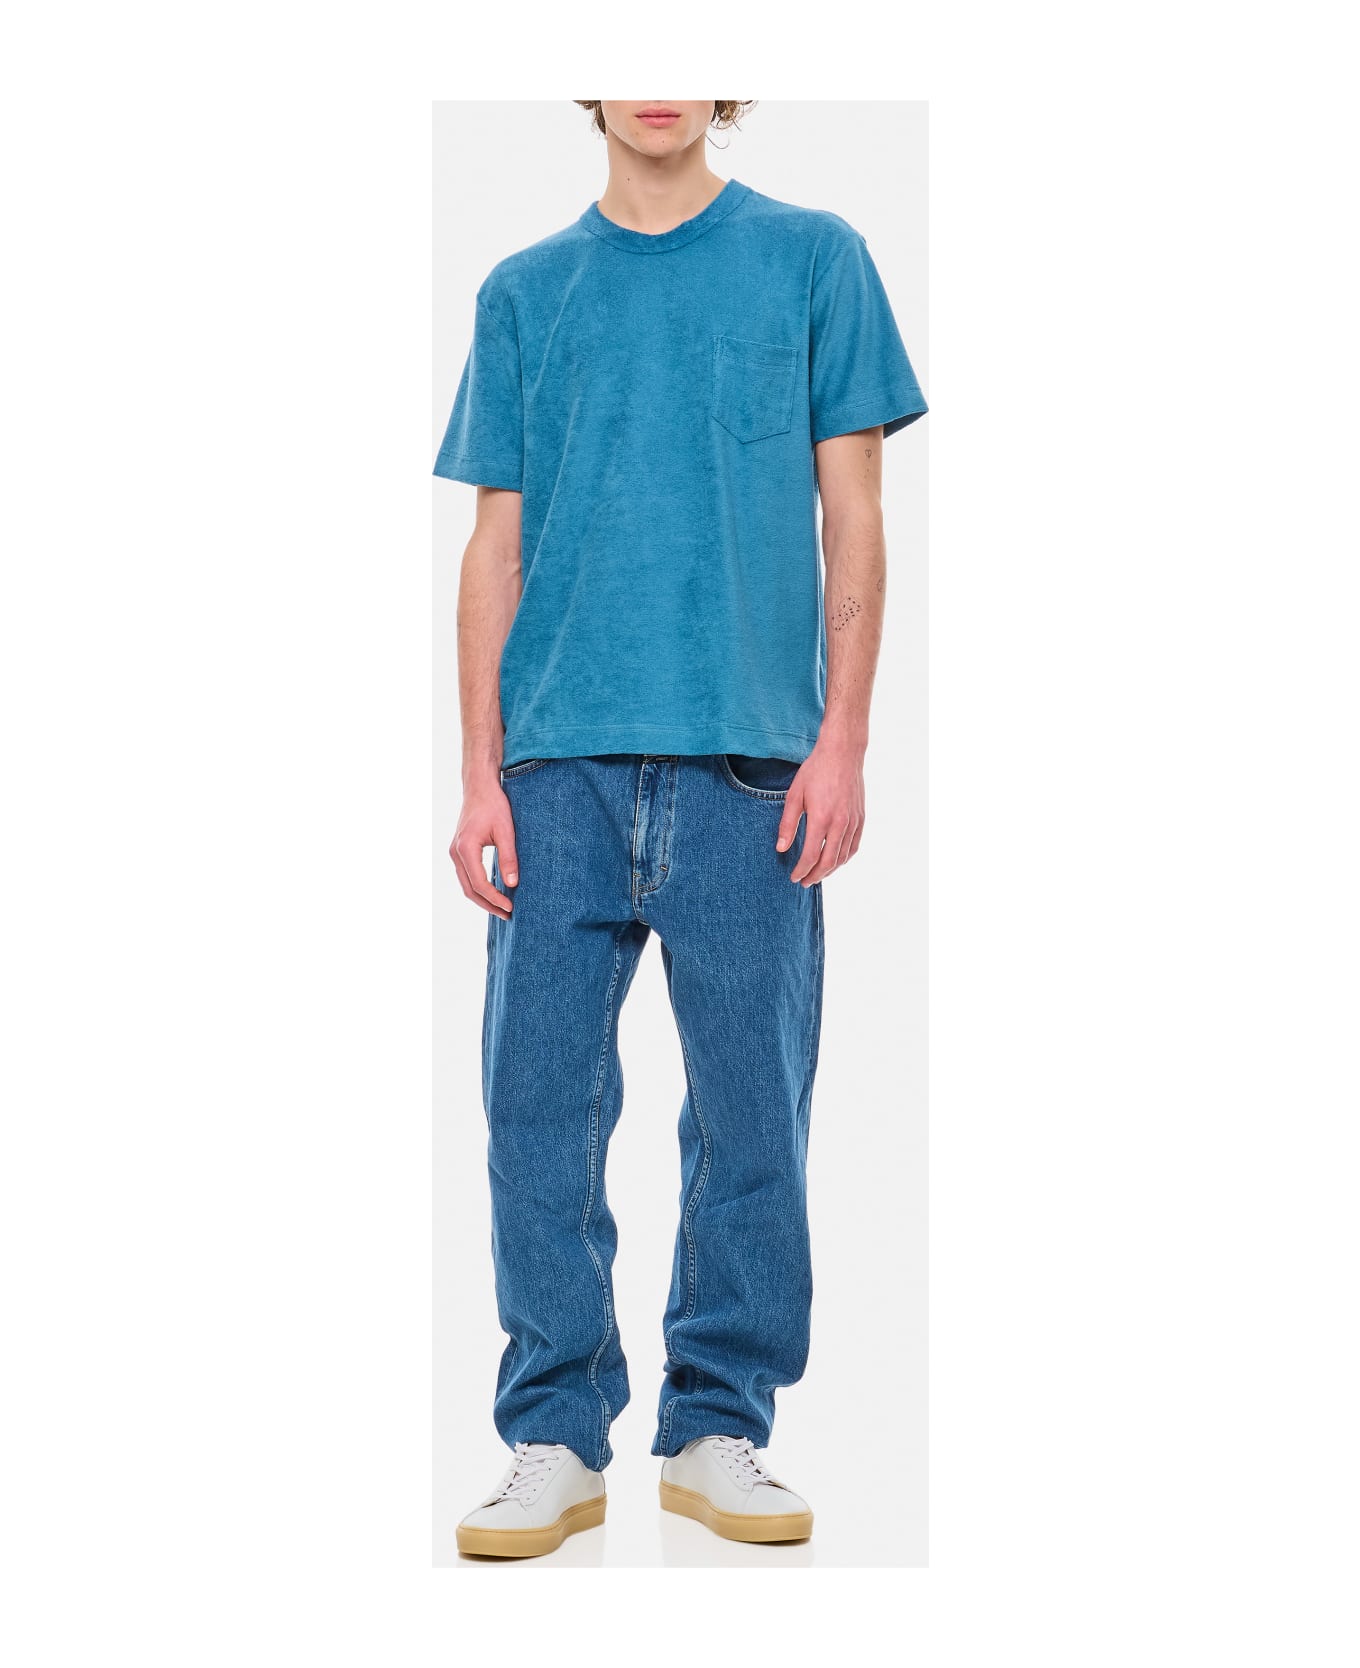 Howlin Shortsleeve Cotton T-shirt - Blue